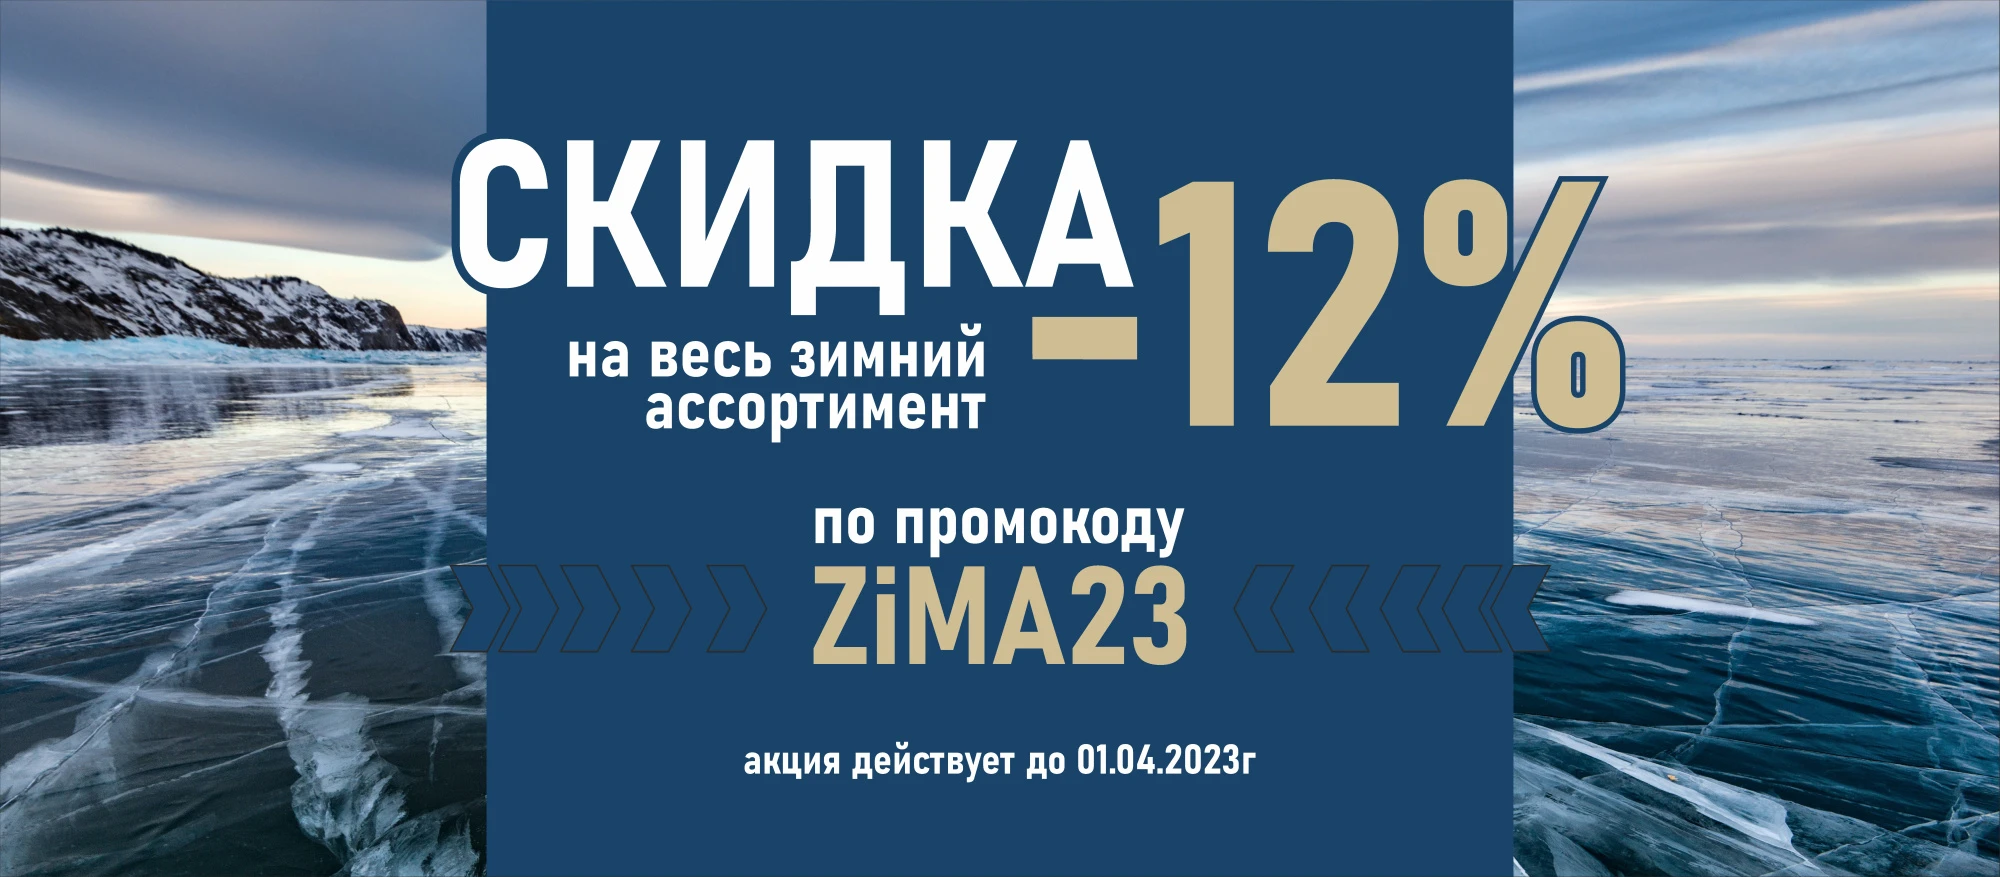 Скидка на весь зимний ассортимент ZIMA23